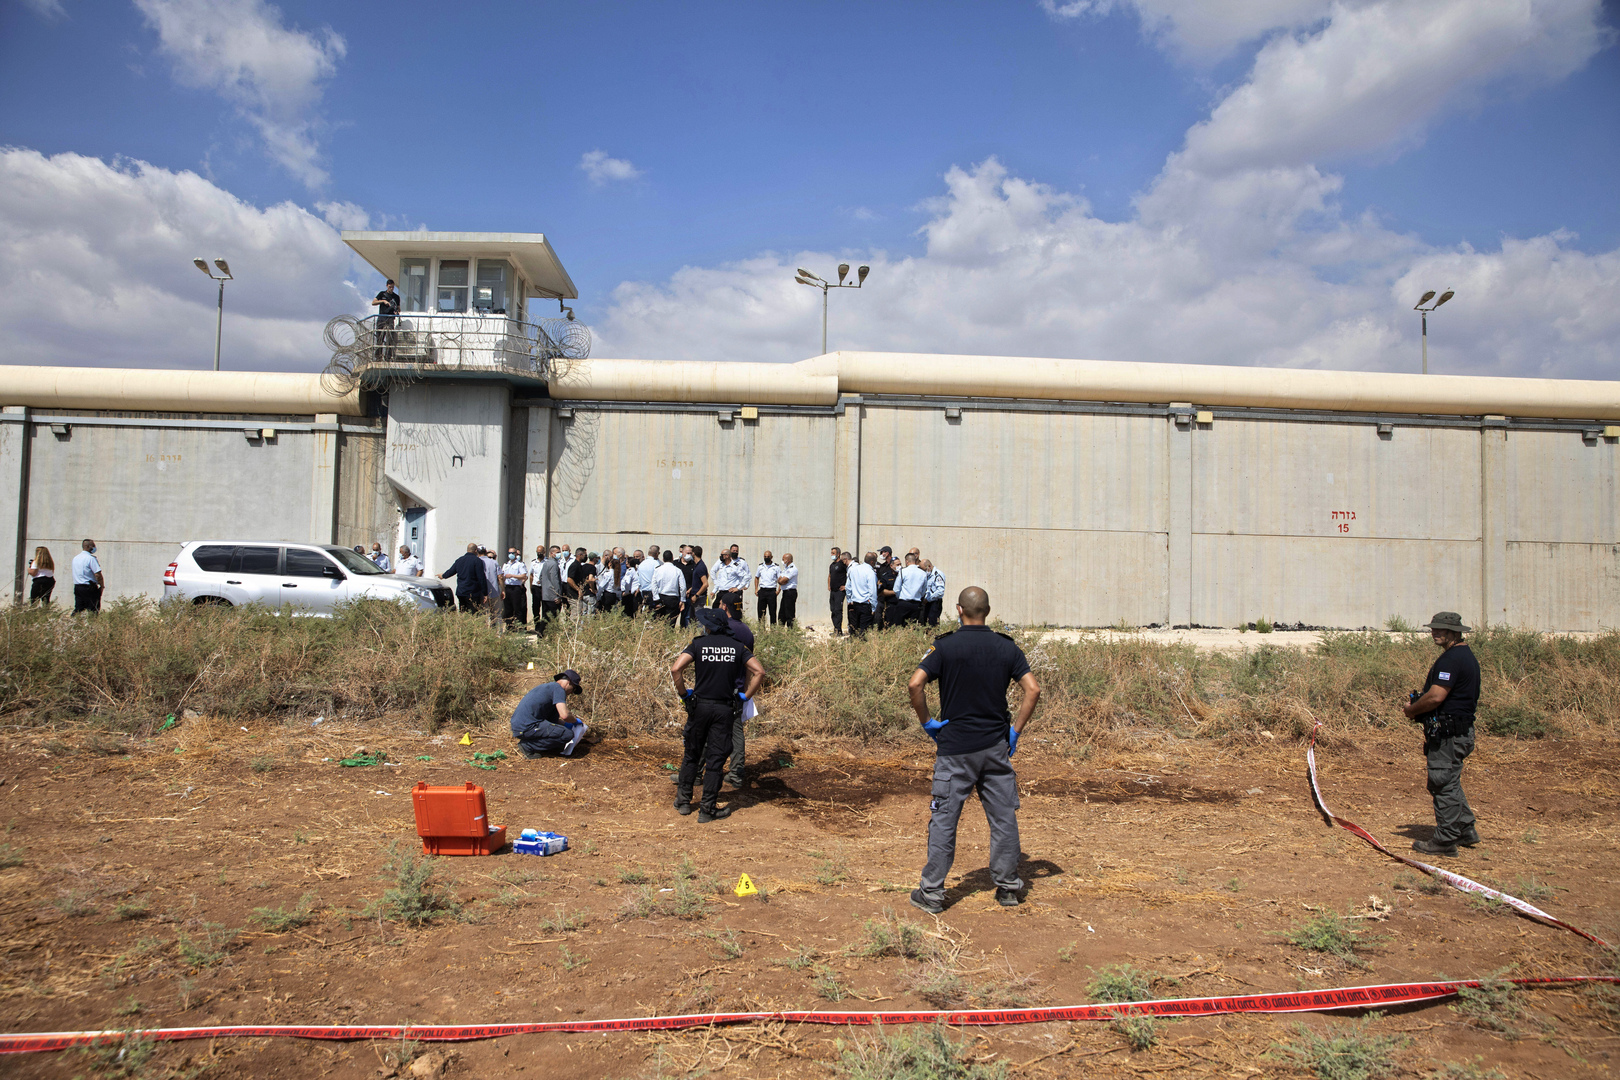 "شؤون الأسرى": النطق بالحكم على الأسرى الهاربين من سجن جلبوع الإسرائيلي الأحد